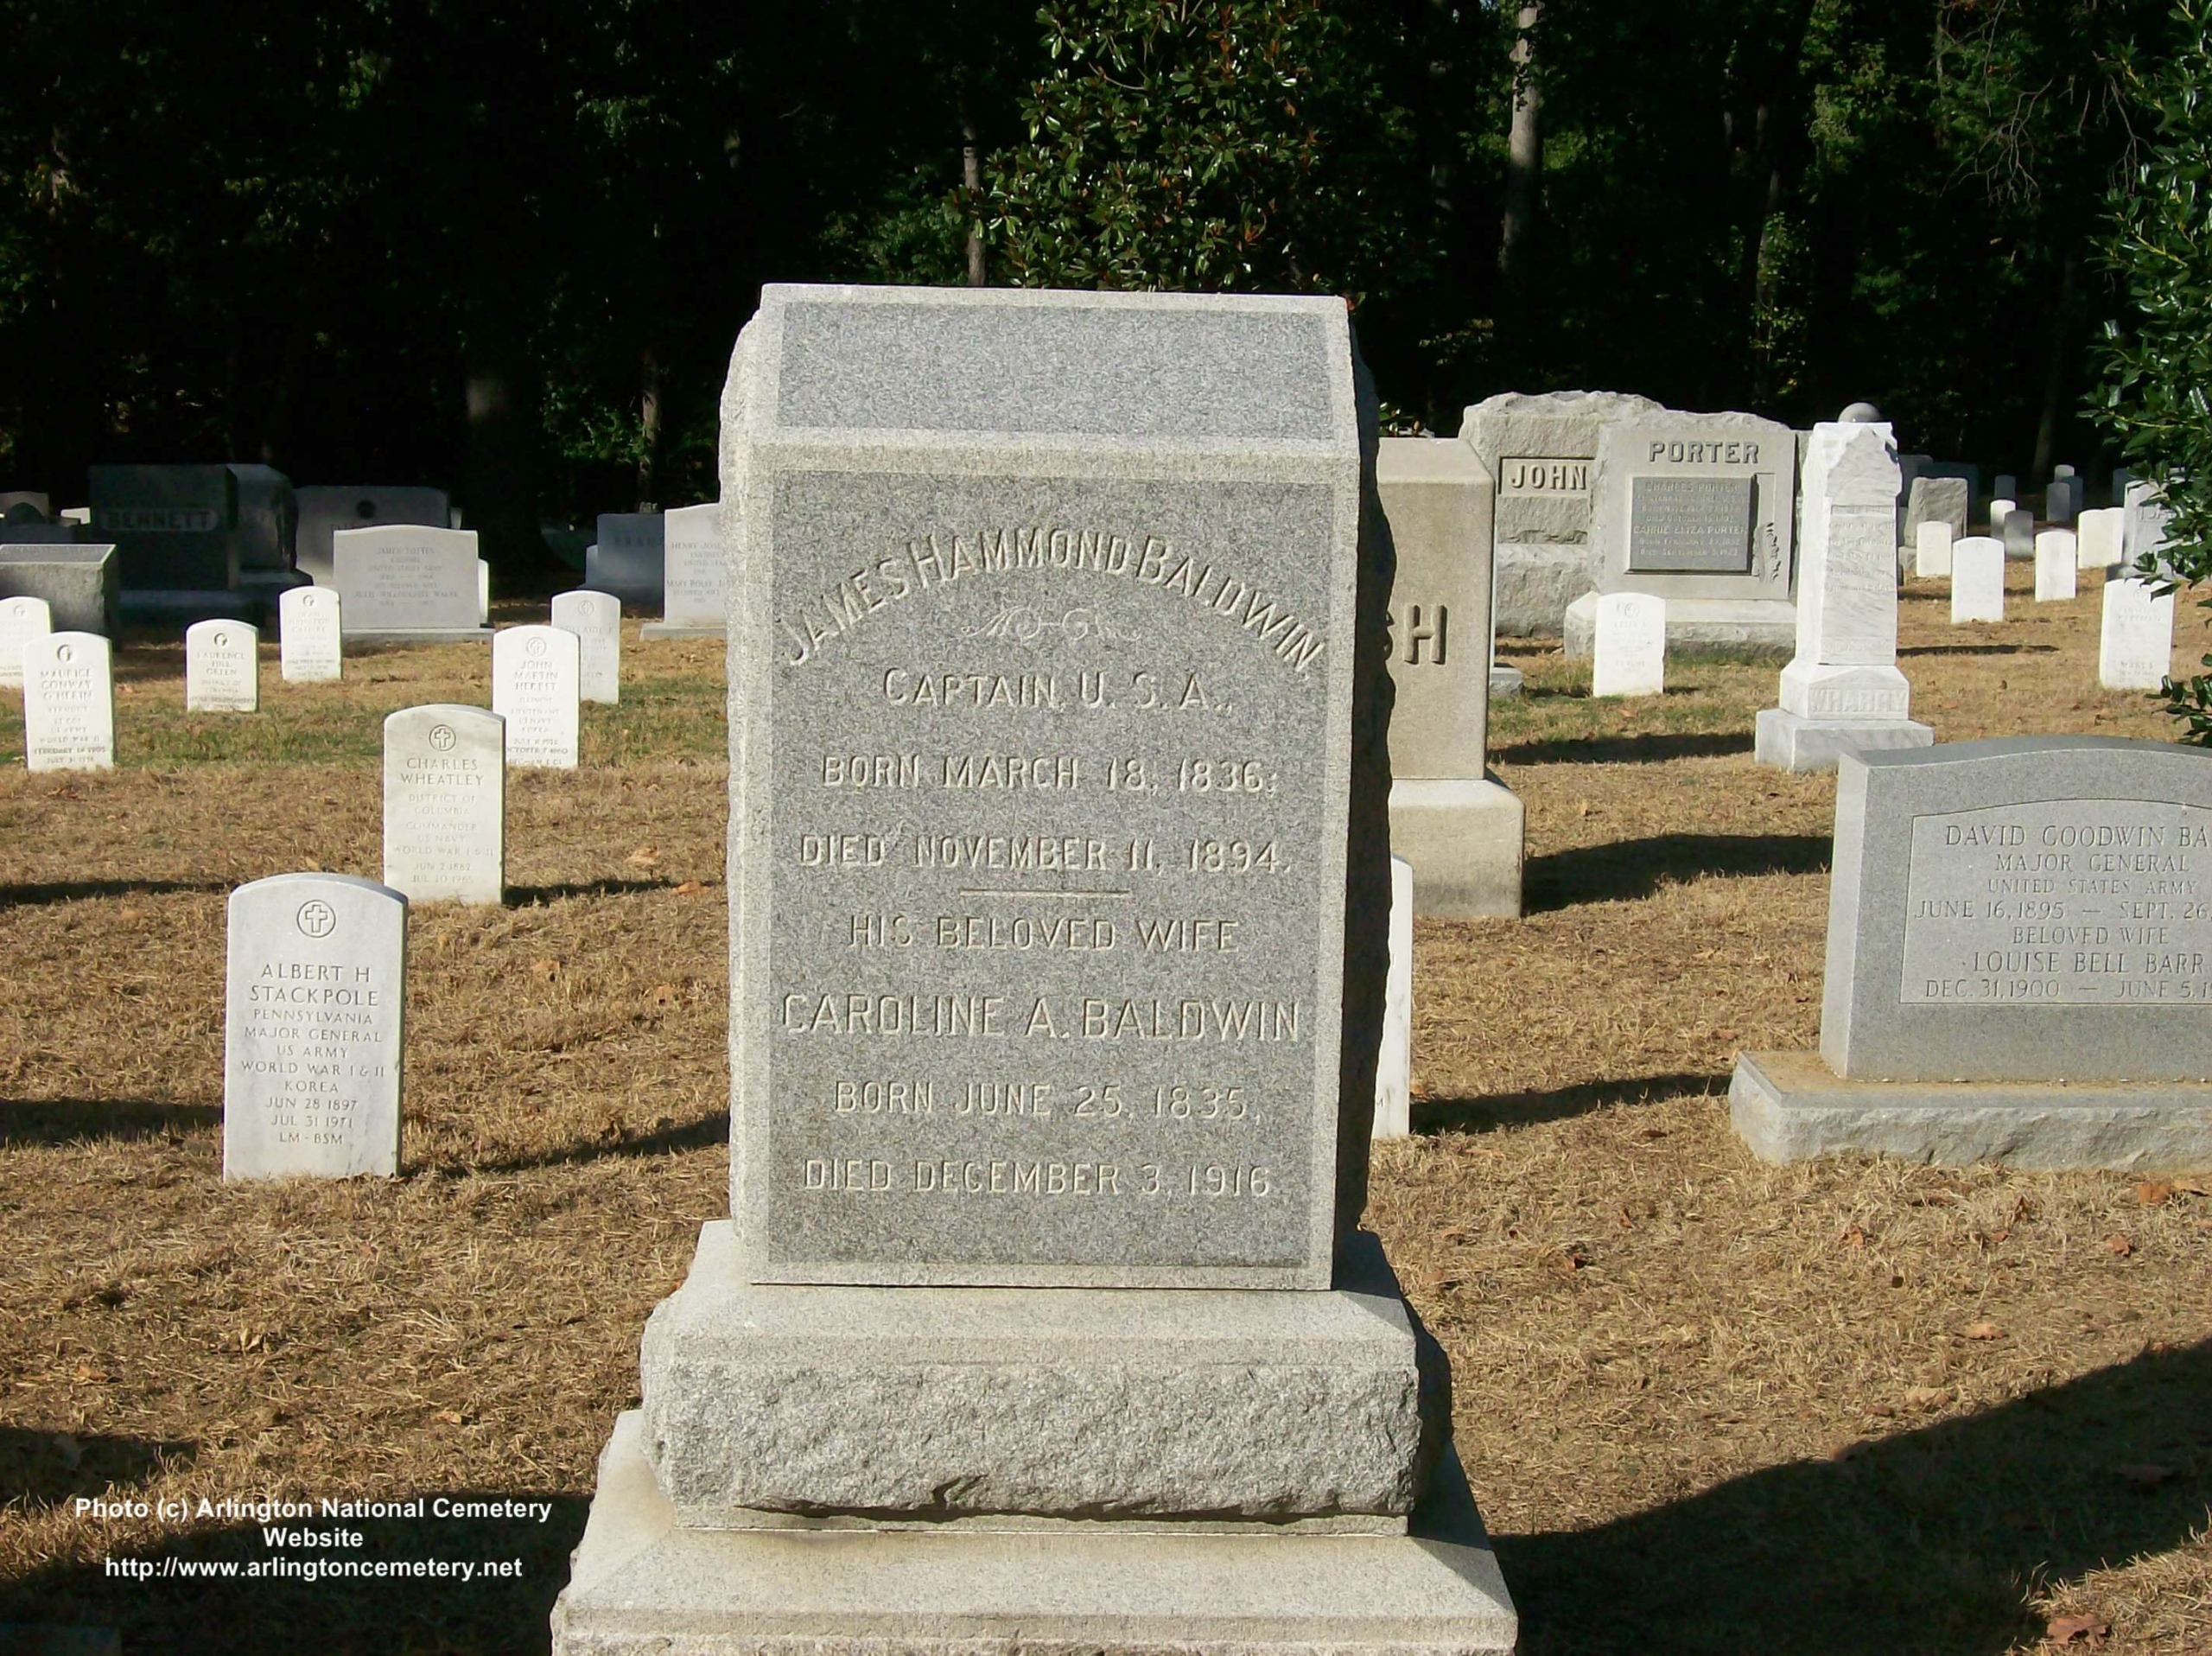 jhbaldwin-gravesite-photo-october-2007-001